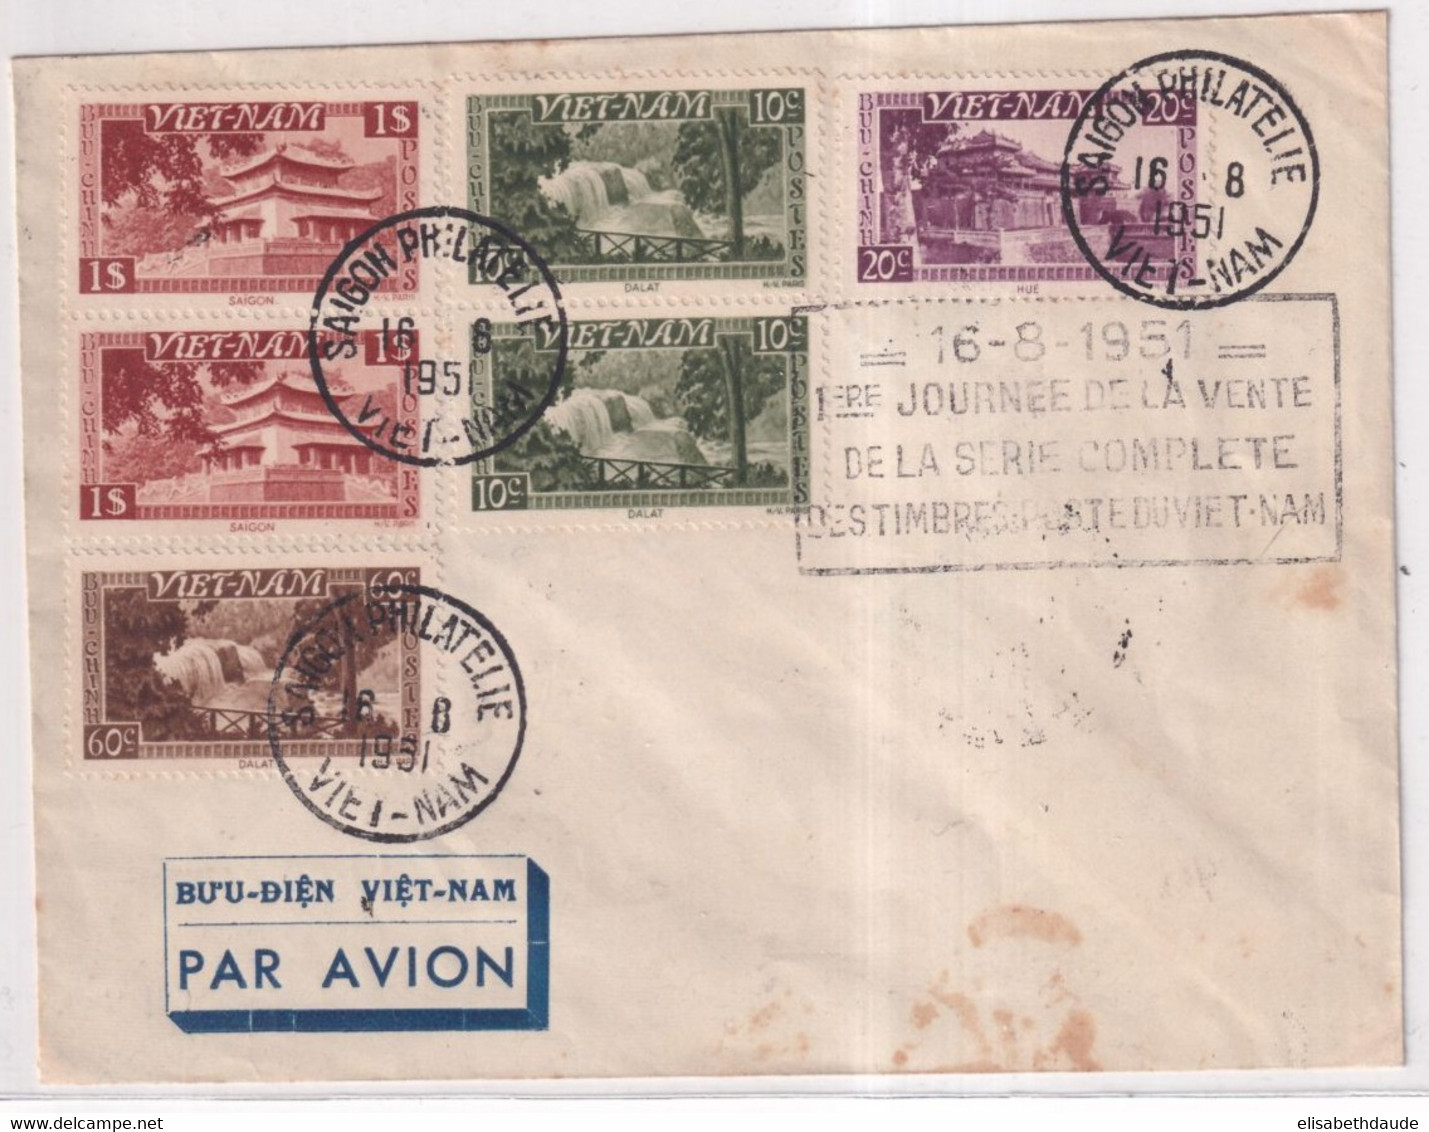 1951 - VIET-NAM - ENVELOPPE Avec 1° JOURNEE De VENTE De La SERIE UNITE NATIONALE ! à SAÏGON - Vietnam